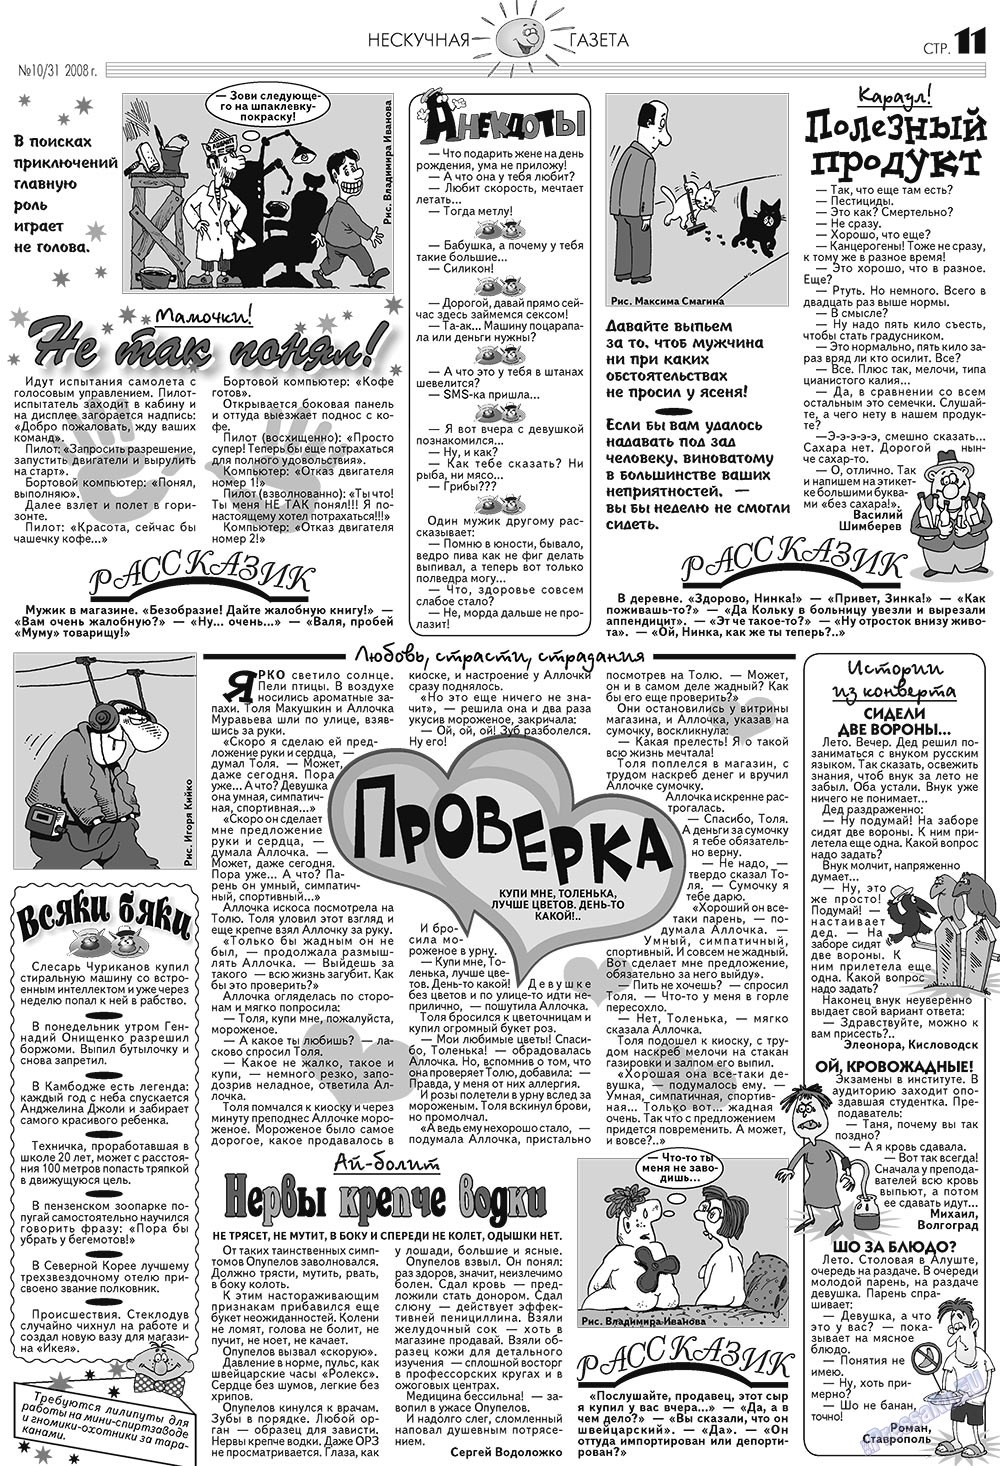 Нескучная газета (журнал). 2008 год, номер 10, стр. 11